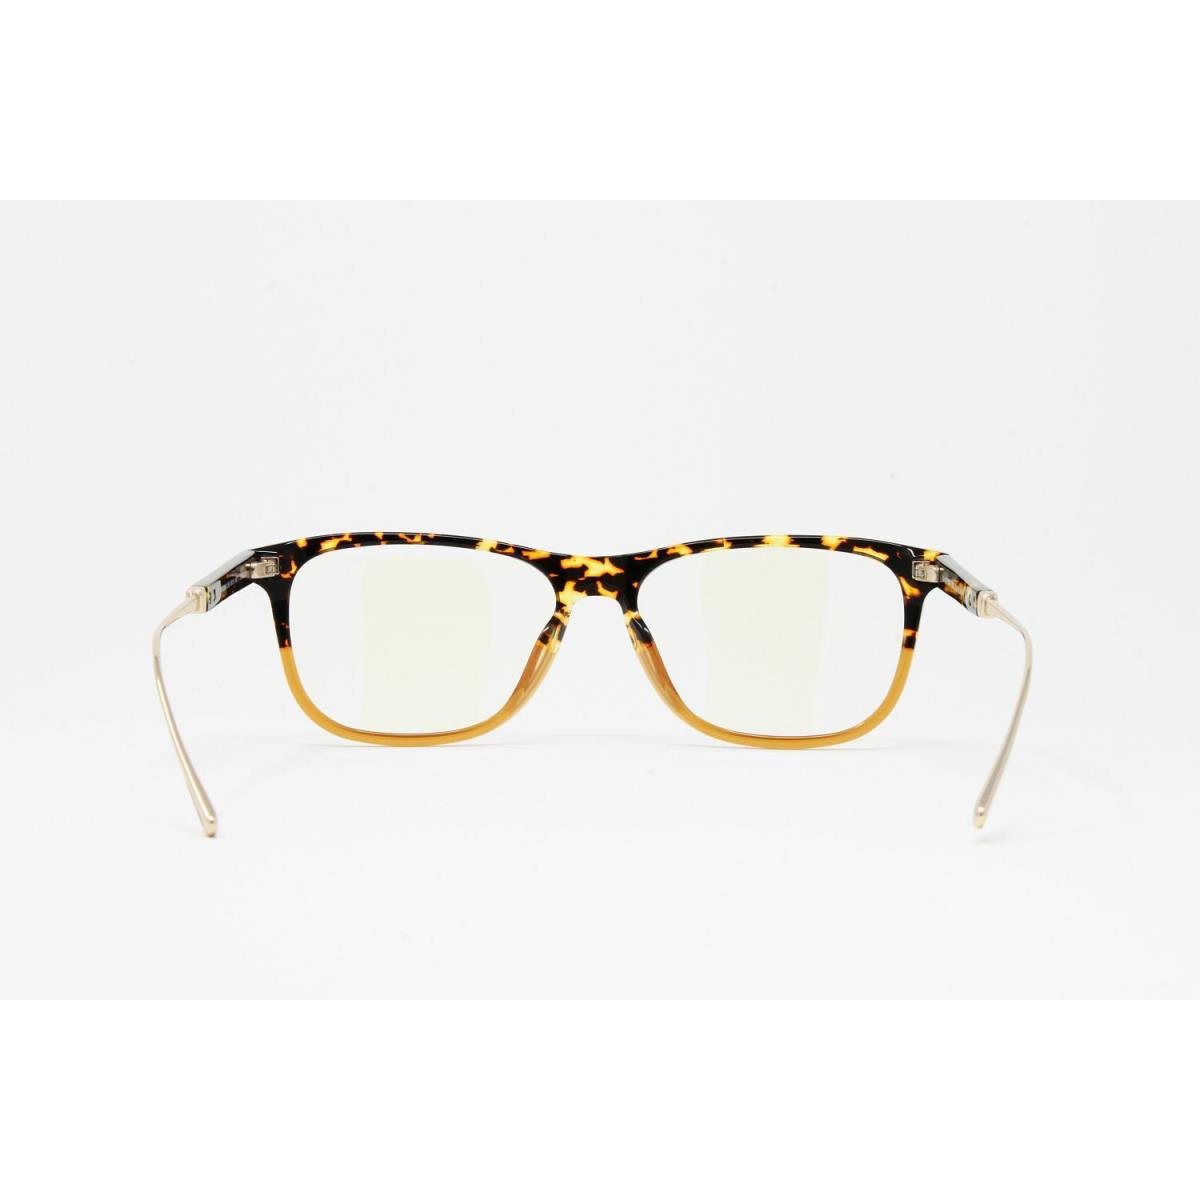 Tom Ford eyeglasses  - Havana Frame 2